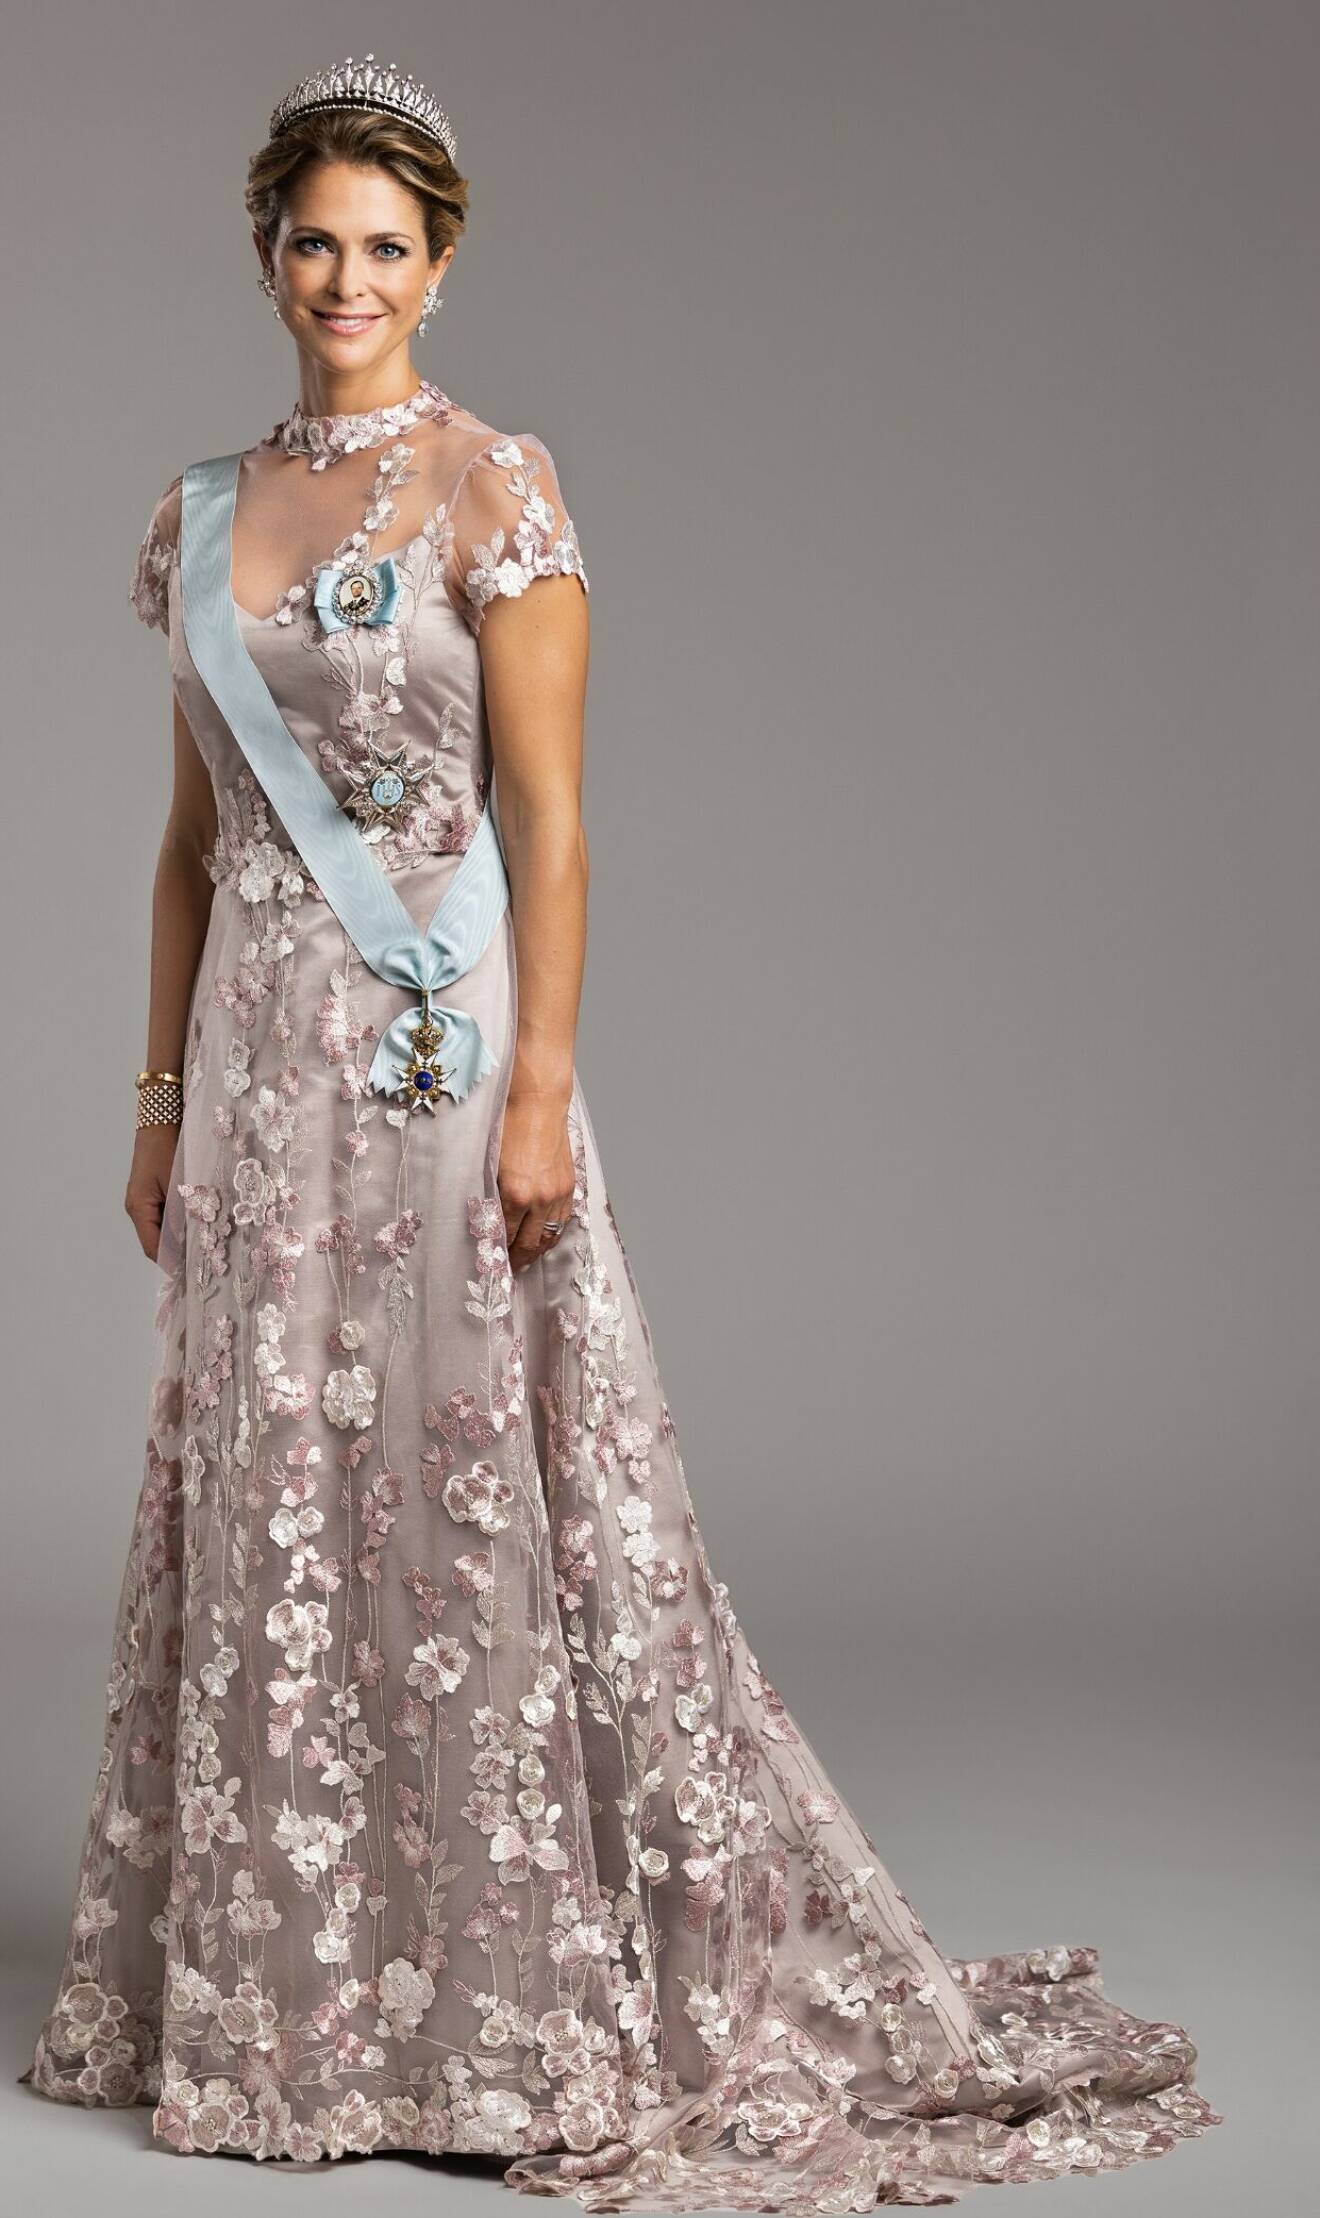 Prinsessan Madeleine i en rosa klänning från Ida Sjöstedt